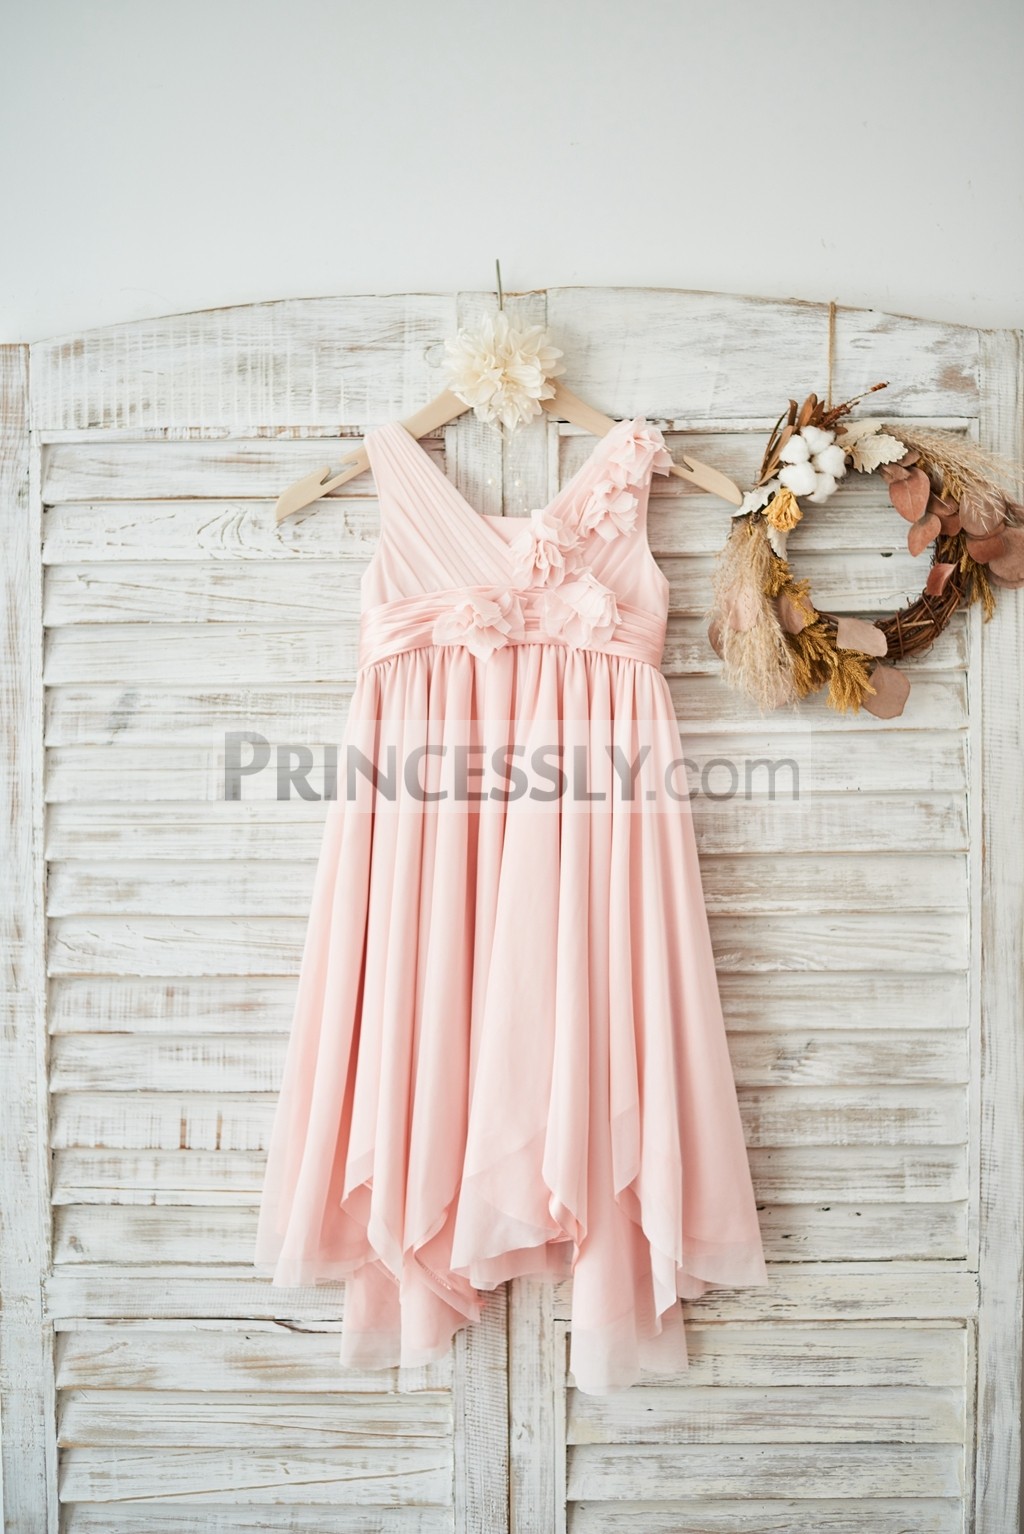 Princessly.com-K1003586-Blush Pink Tulle V Neck Wedding Flower Girl Dress with Flowers-31